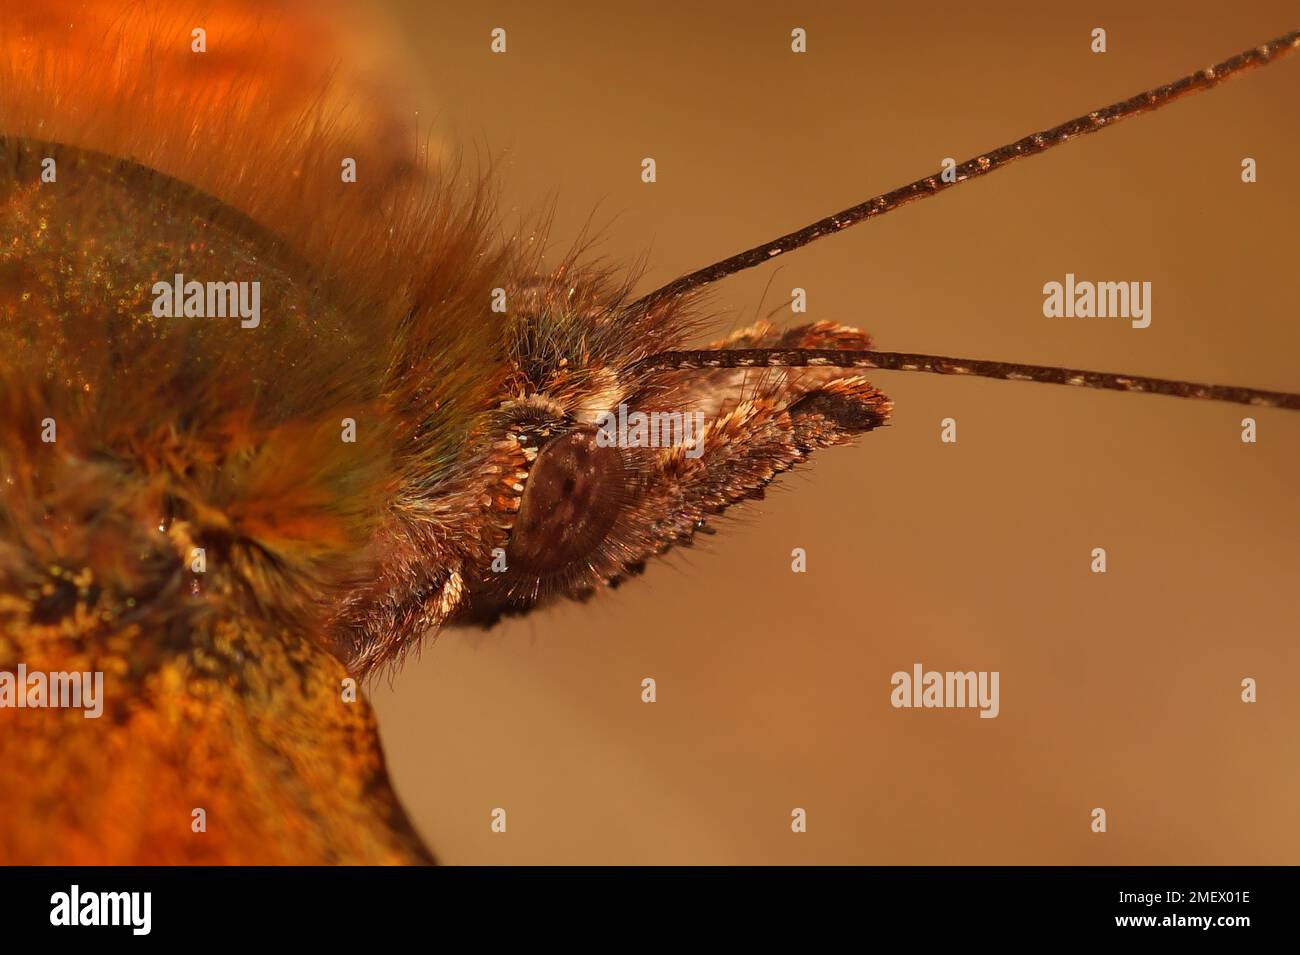 Detaillierte extreme Nahaufnahme auf dem Kopf eines Anglewing Komma-Schmetterlings, Pologonia c-Album, mit seinem behaarten Kopf Stockfoto